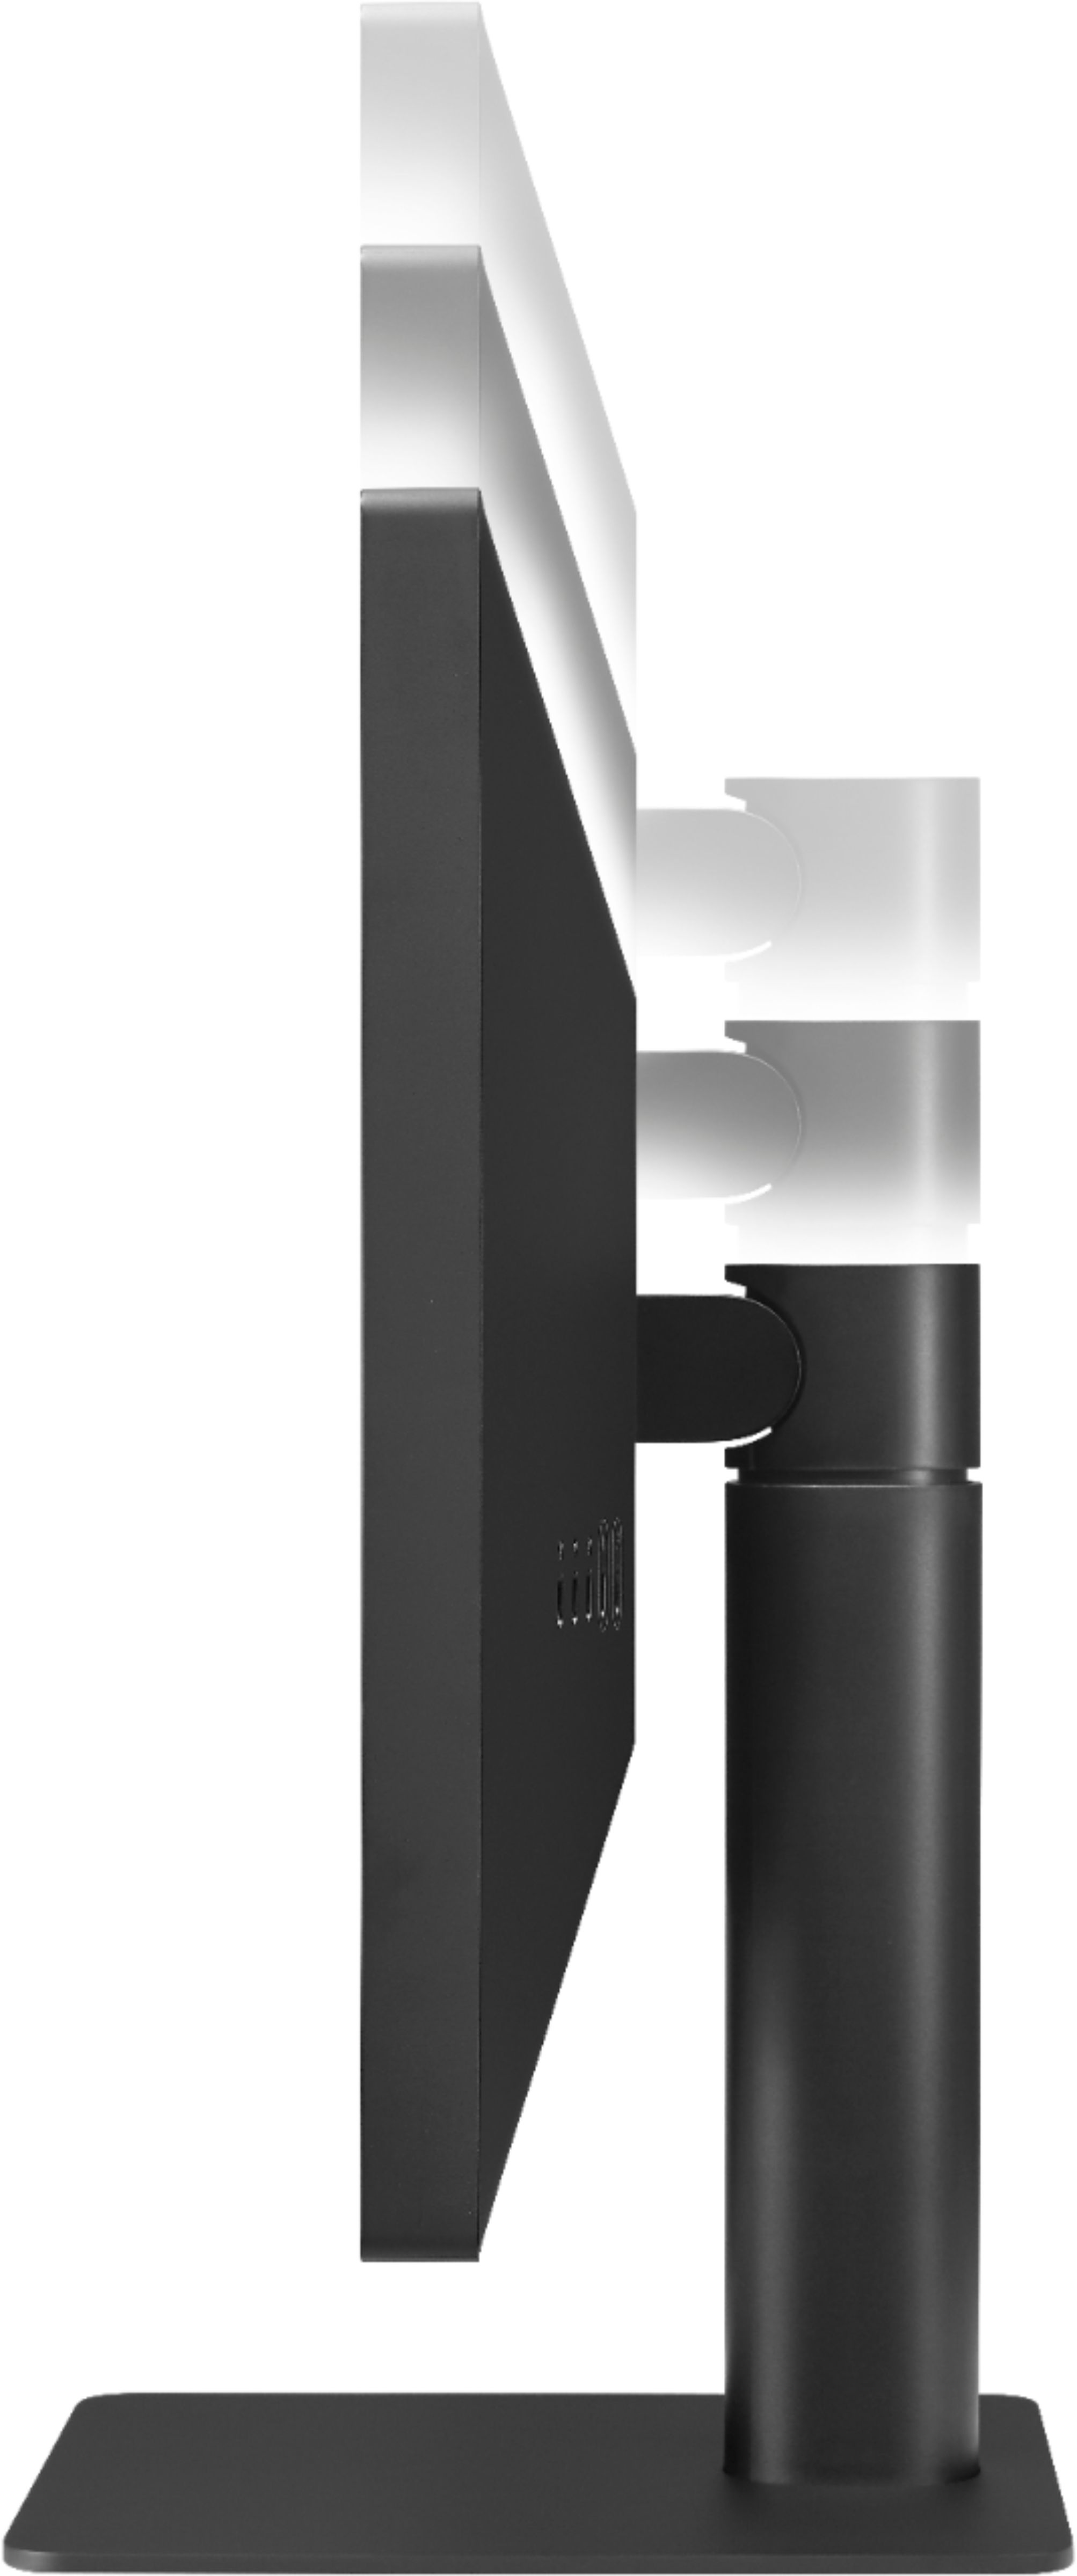 LG 24MD4KL-B – Monitor IPS ultrafino UHD (3840 x 2160) de 24 pulgadas,  amplia gama de colores P3, brillo de 500 nits, Thunderbolt 3 (x2), puertos  – Yaxa Colombia